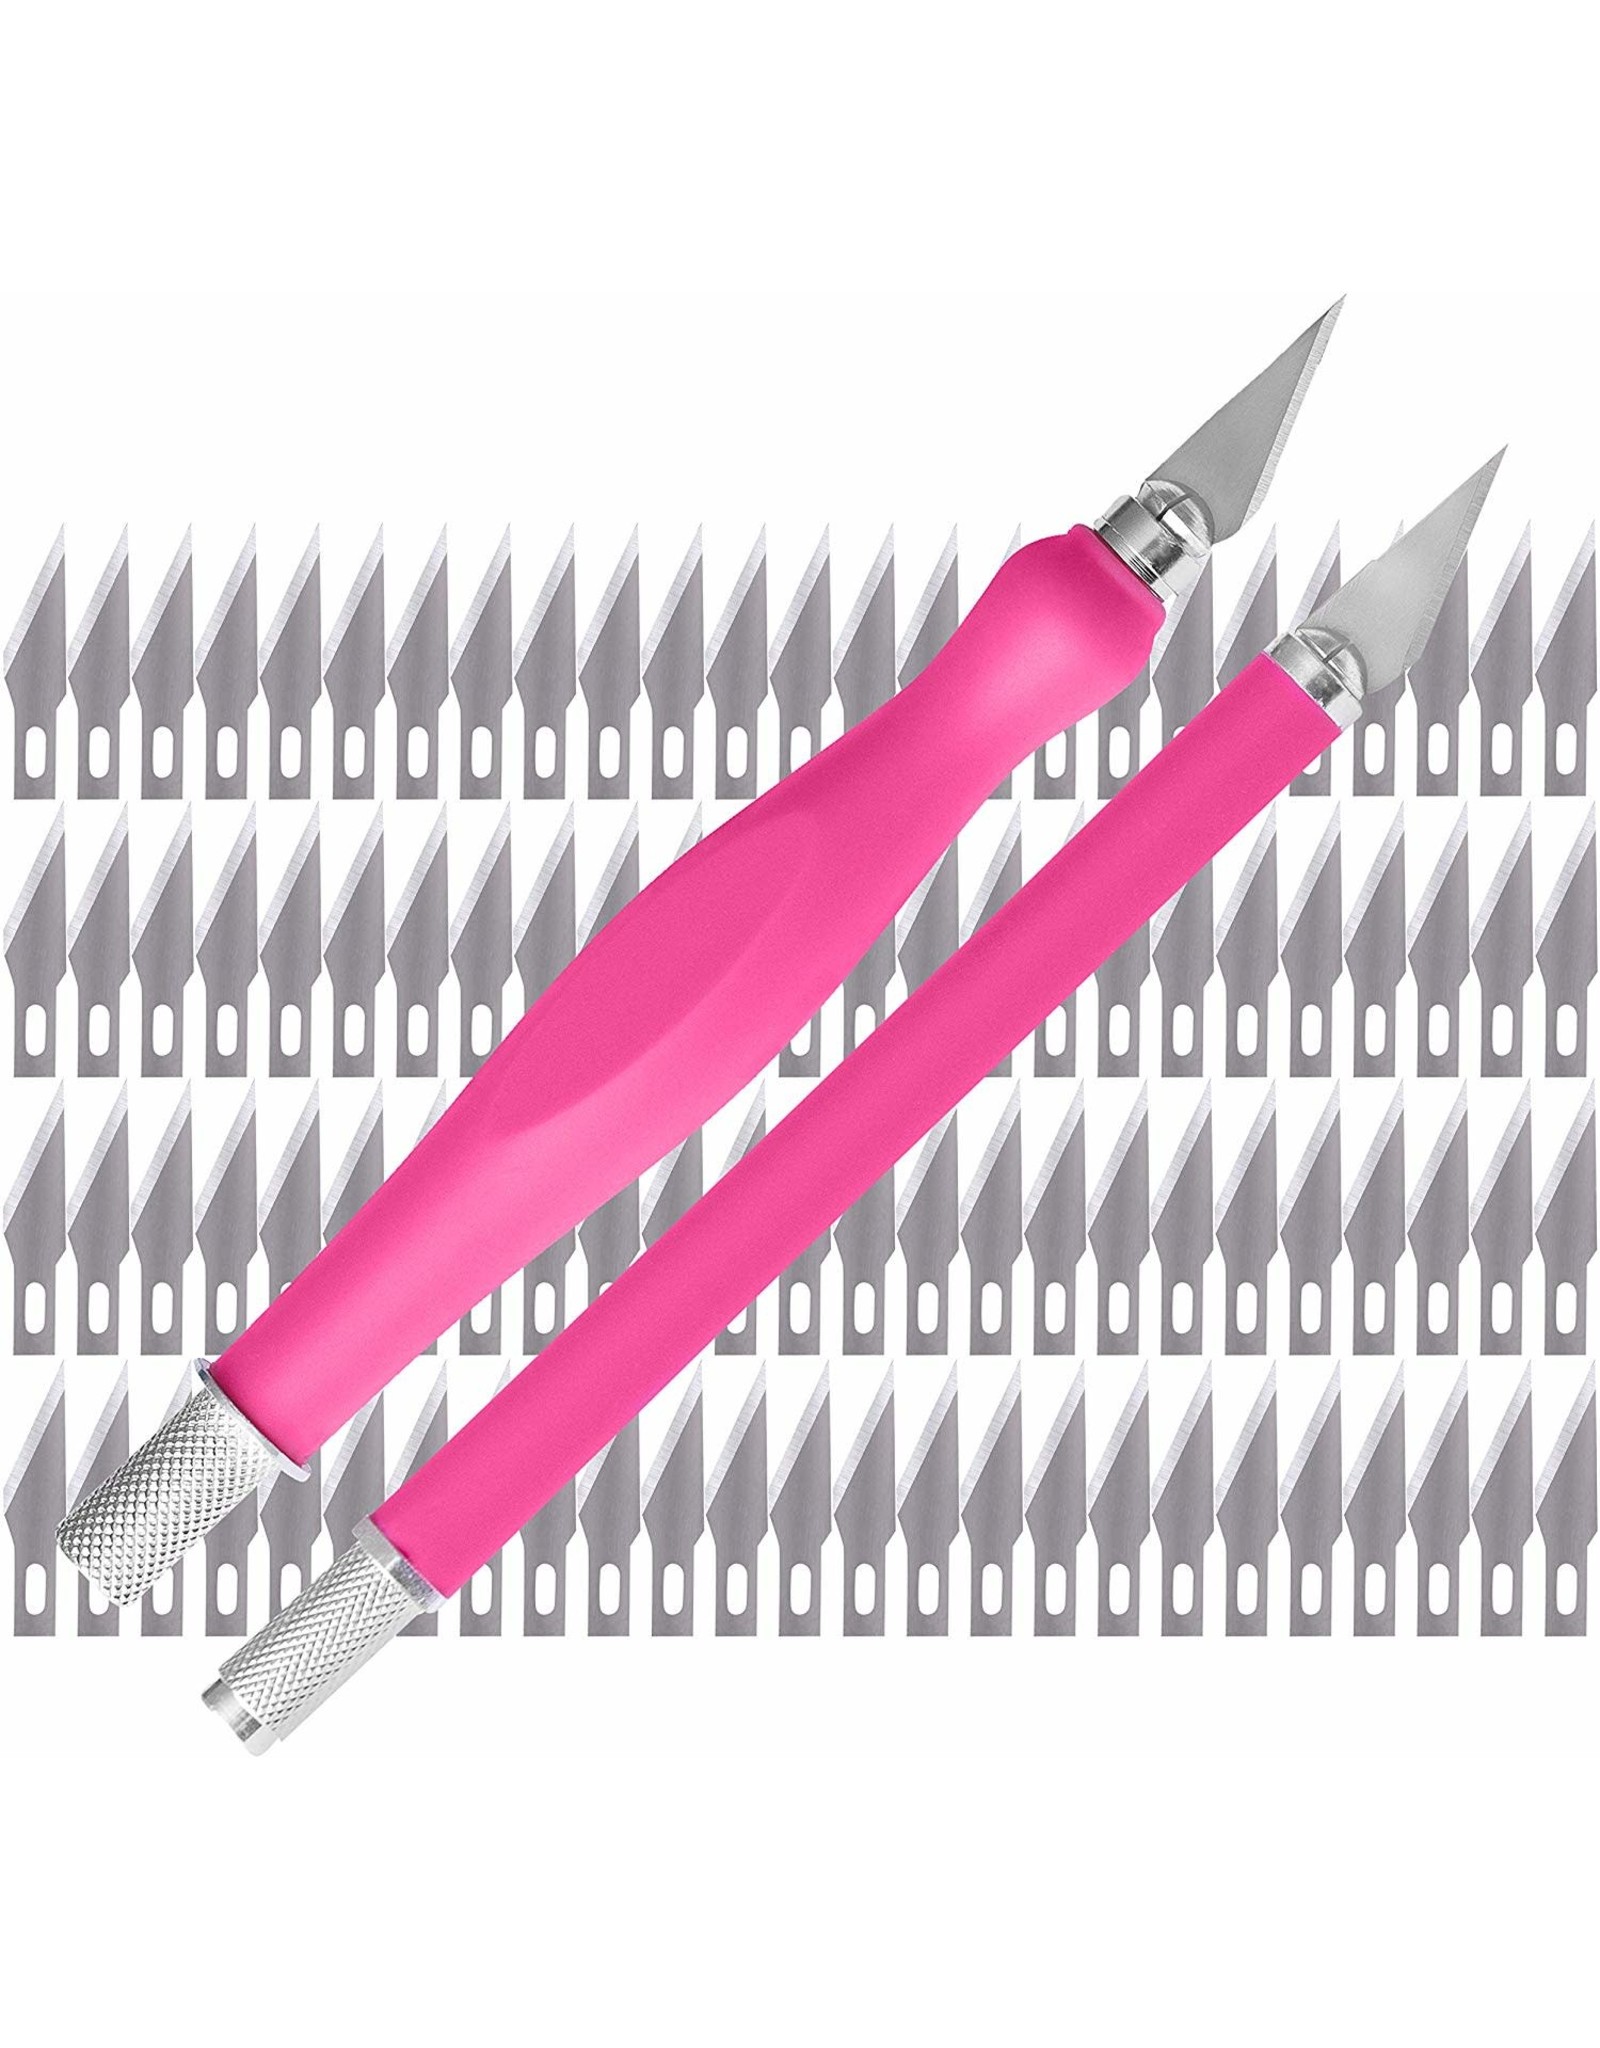 W.A. Portman WA Portman Pink Craft Knife Set